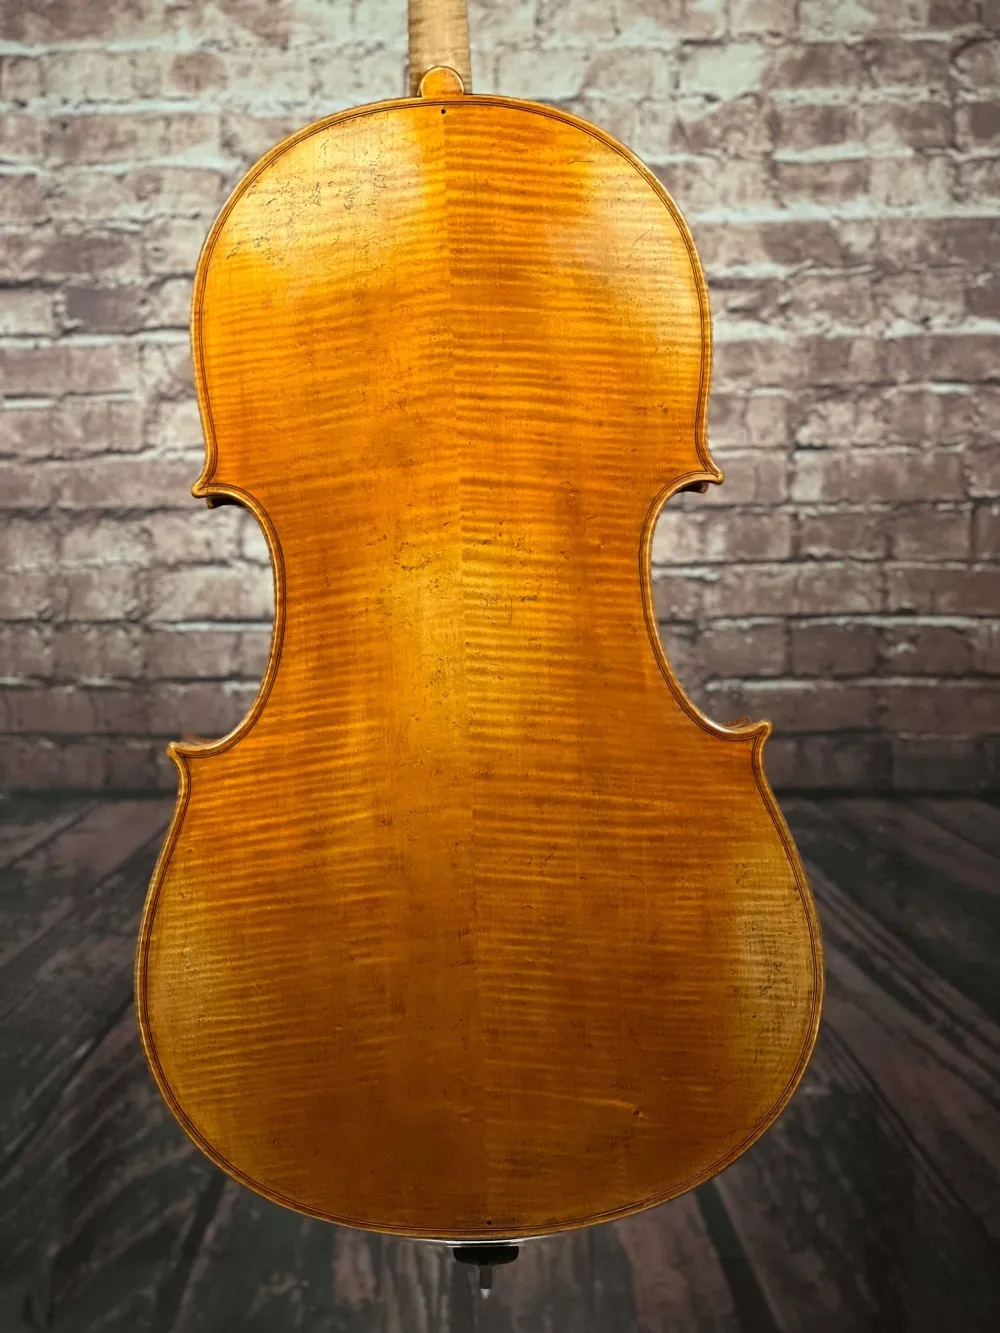 Boden-Detailansicht einer Simon Joseph Goffriller Cello (Violoncello) Handarbeit 2019